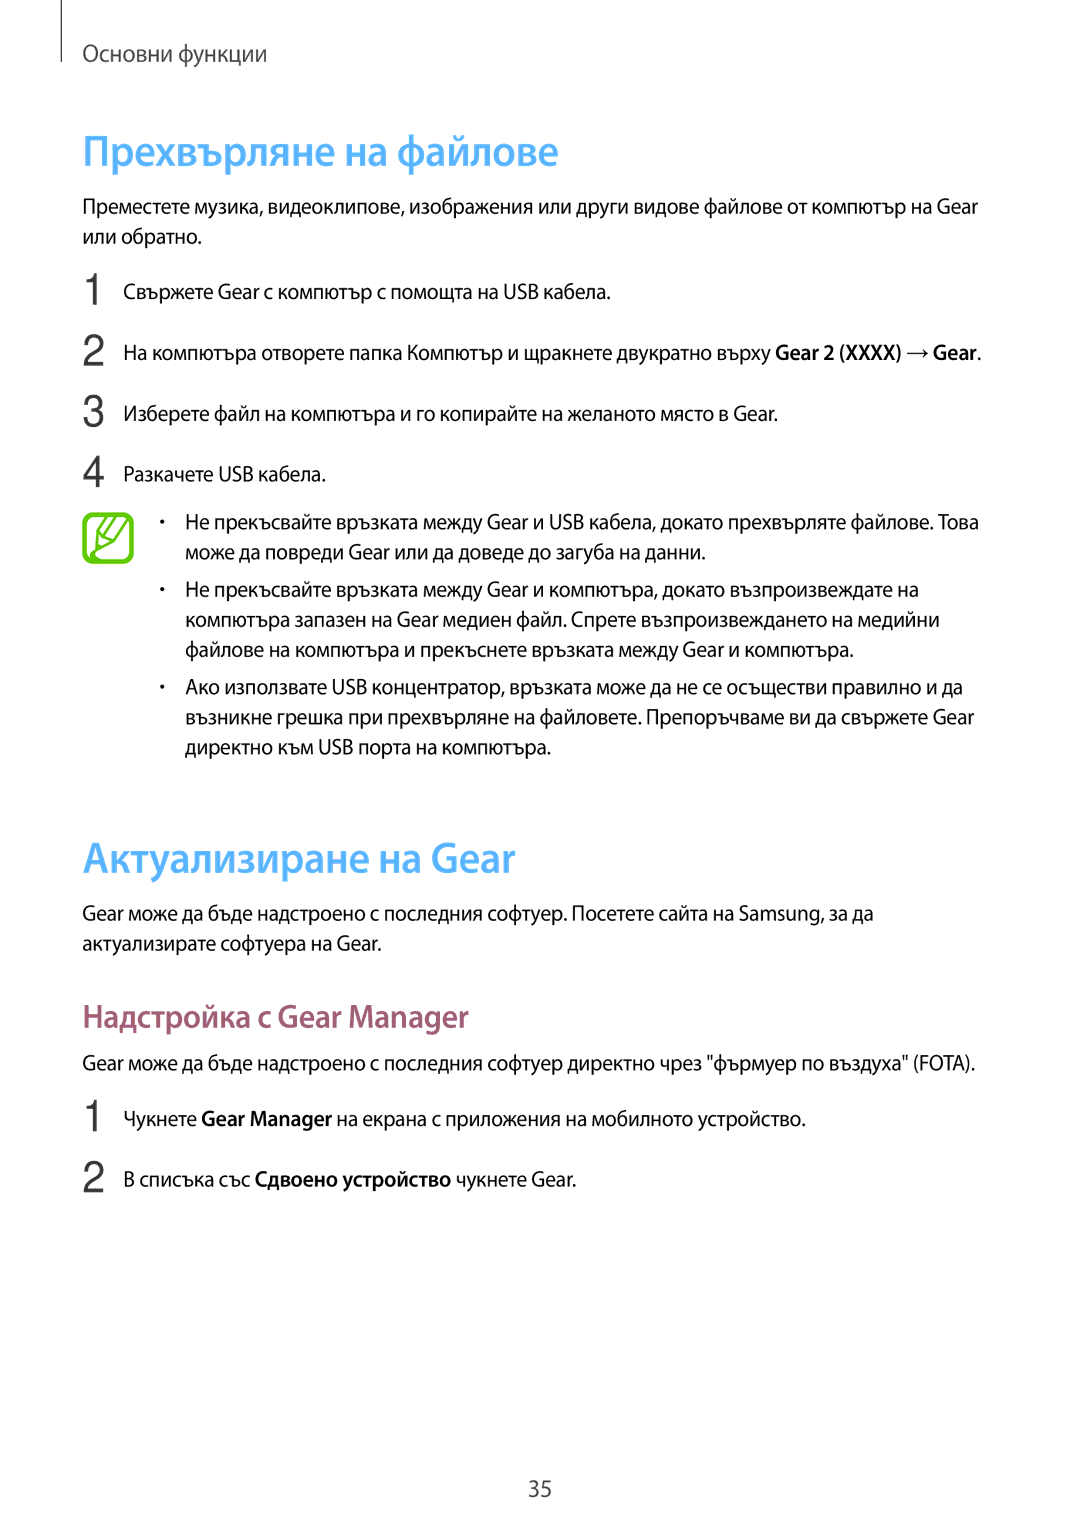 Samsung SM-R3800MOAROM, SM-R3800GNAROM manual Прехвърляне на файлове, Актуализиране на Gear, Надстройка с Gear Manager 